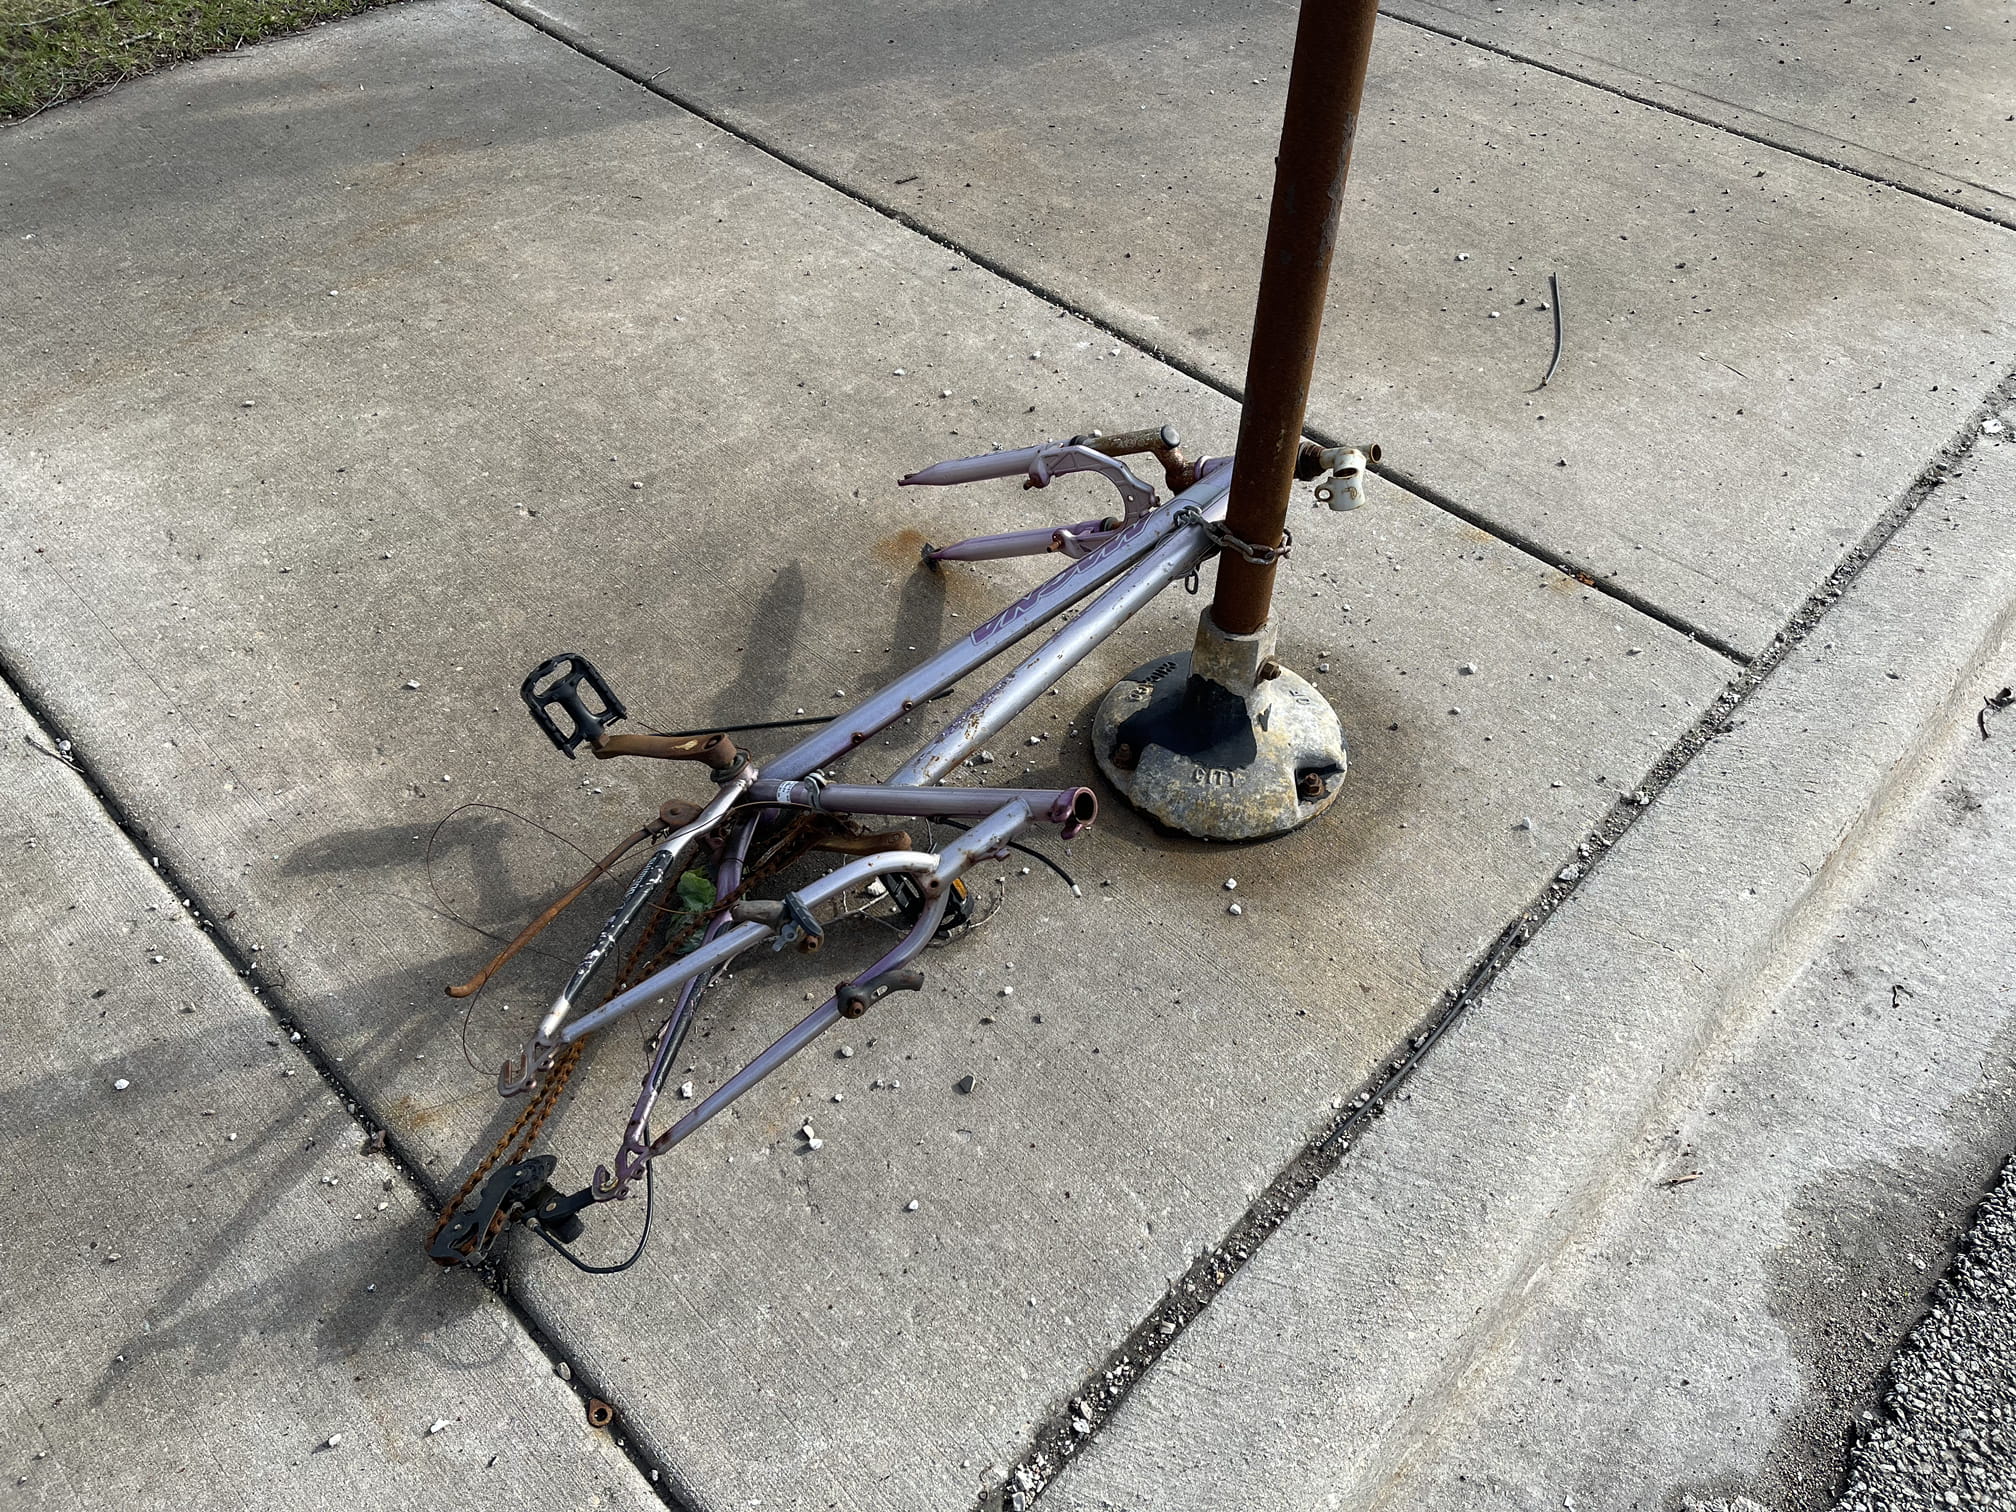 Scavenged bike